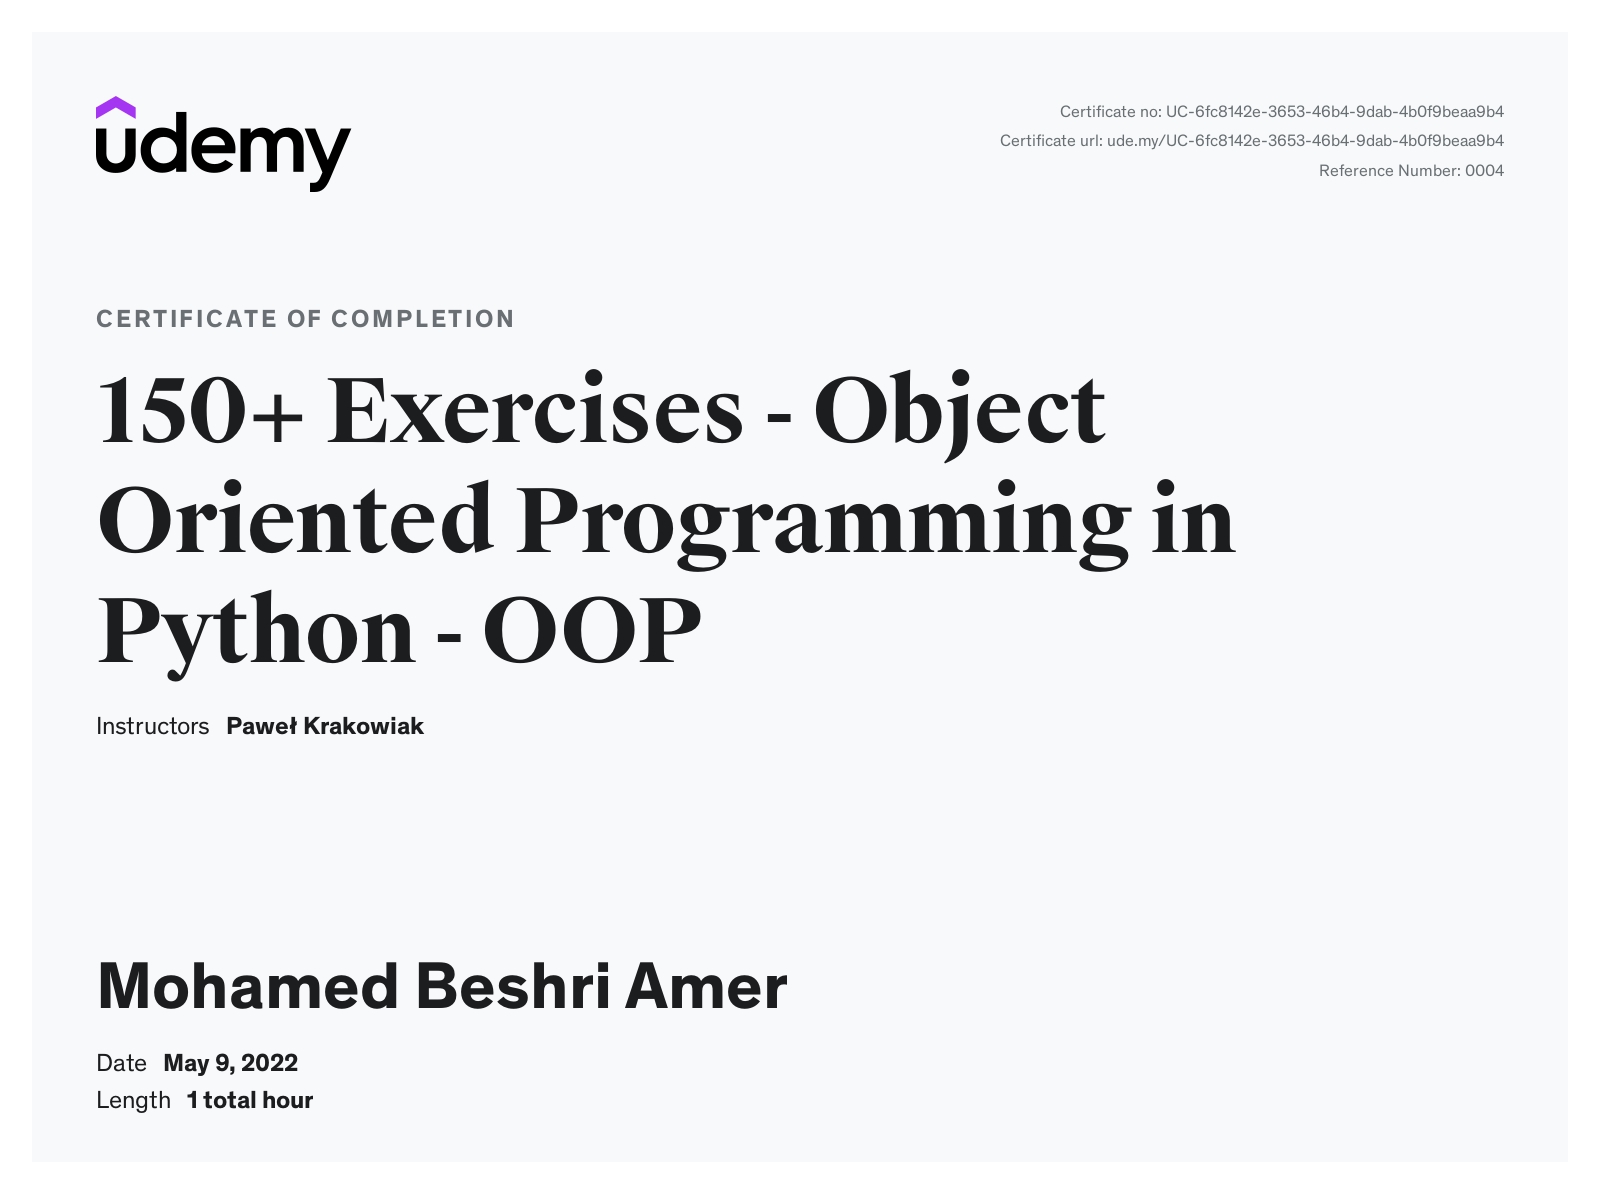 Mohamed Beshri Amer- Python OOP